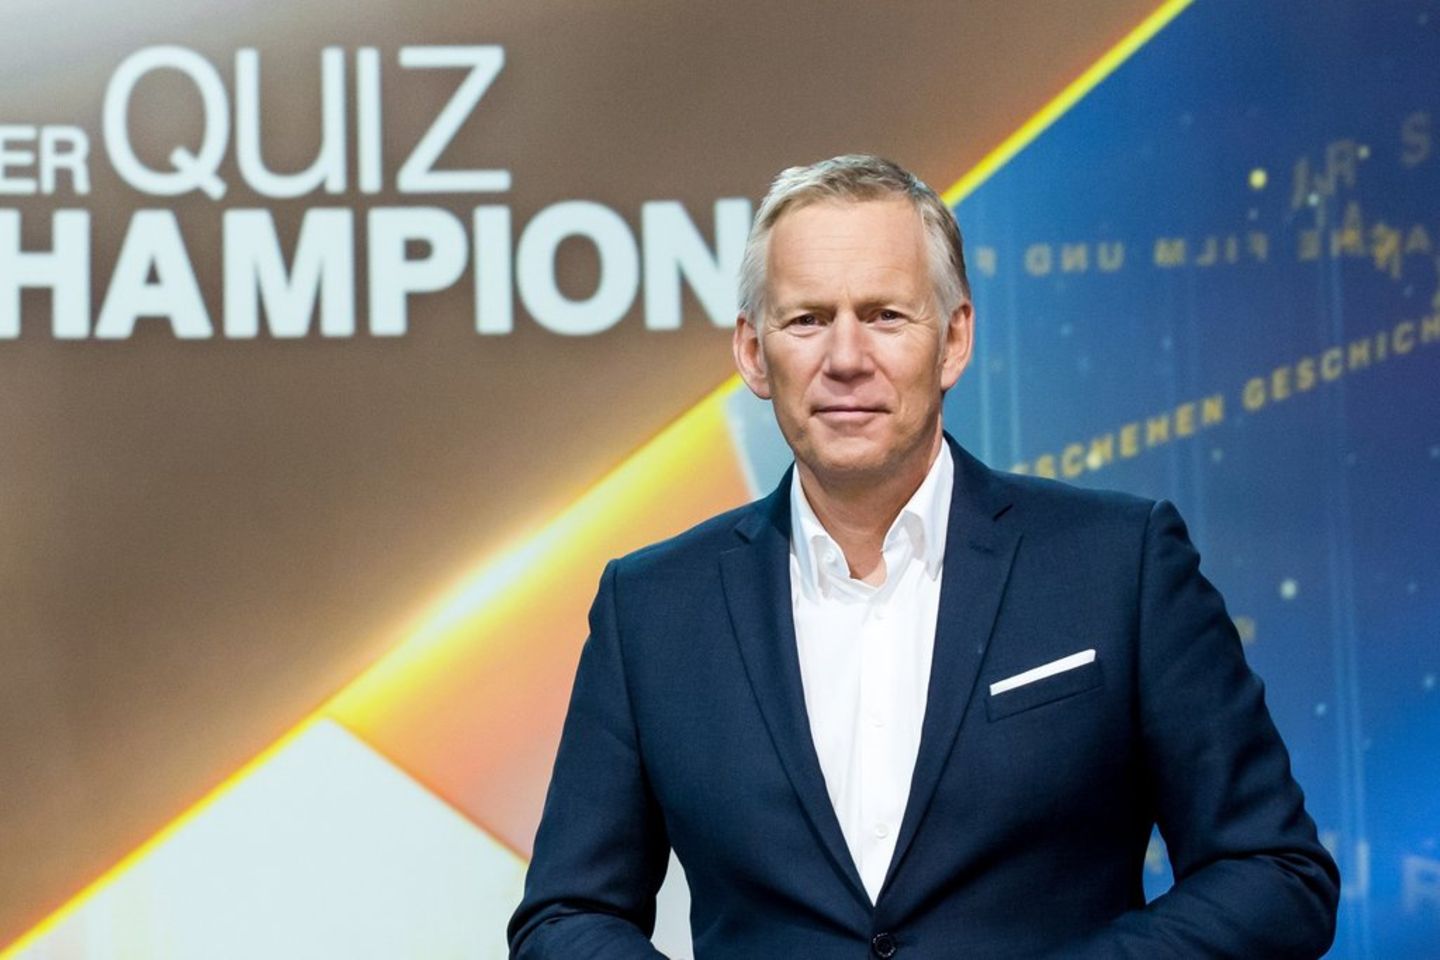 "Der Quiz-Champion": Johannes B. Kerner moderiert die Rate-Duelle.